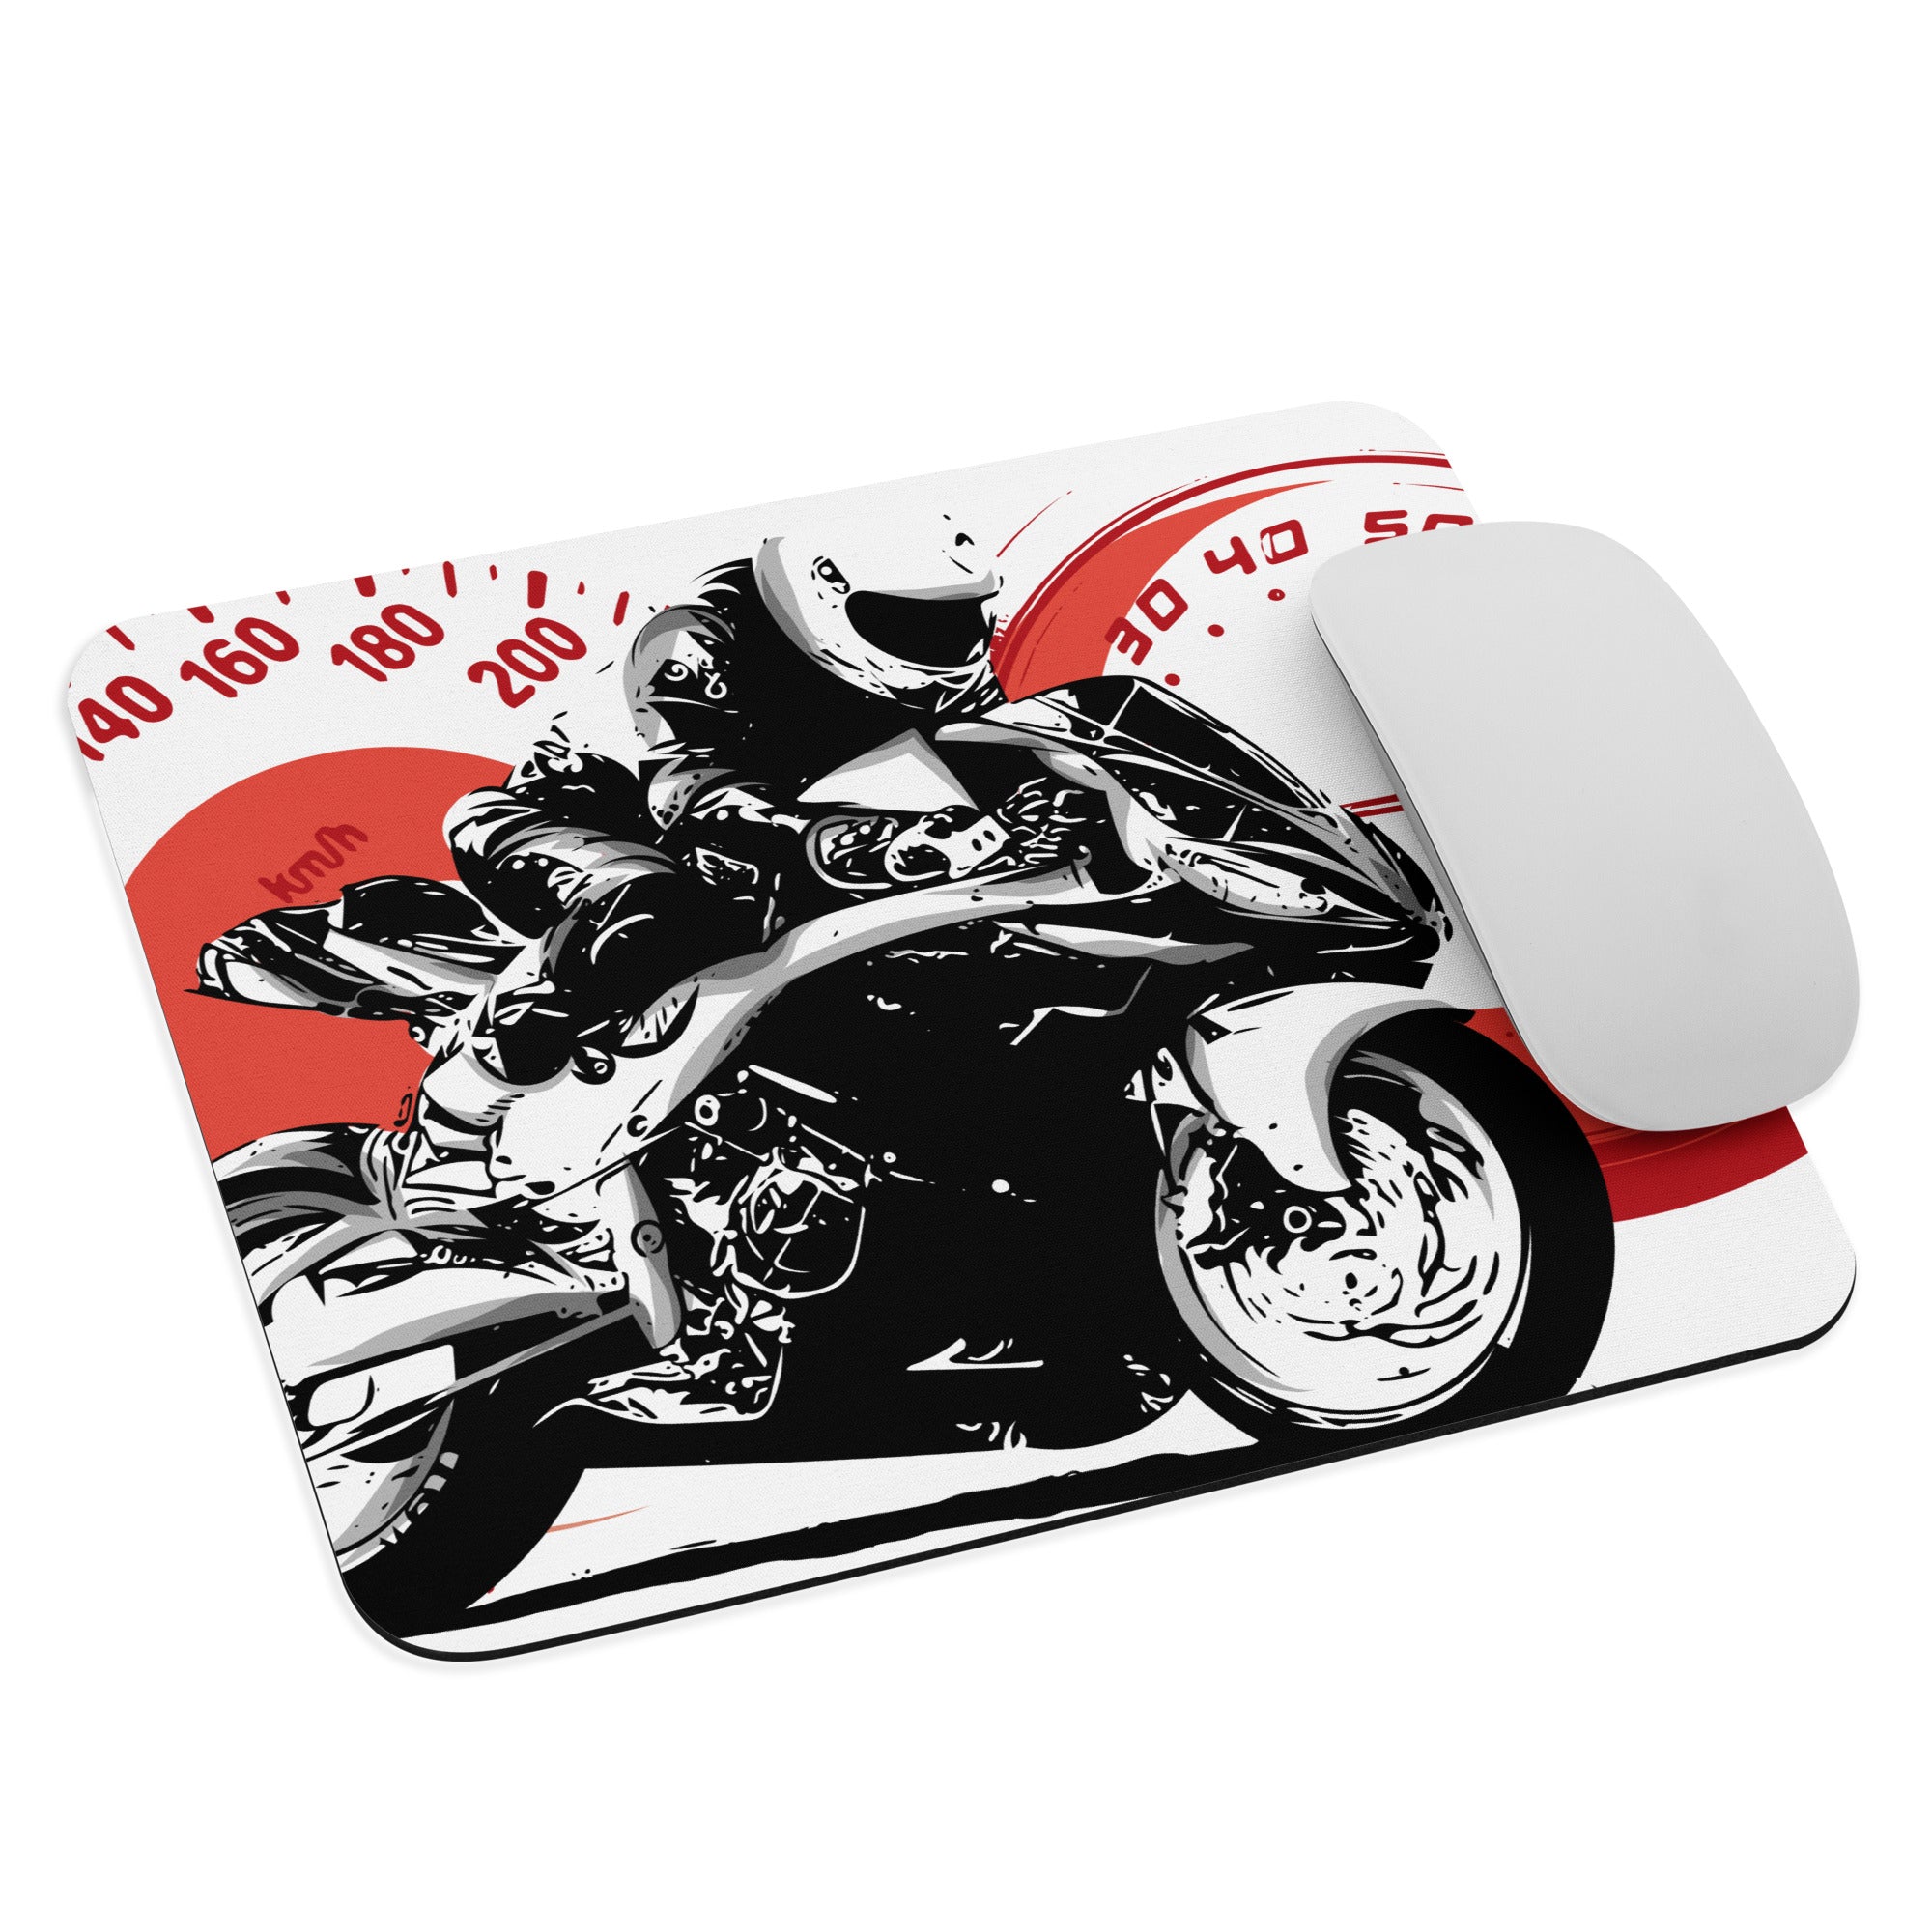 Motorrad-Art, Mousepad mit aufgedrucktem Motorrad und Motorradfahrerinnen, Manga, Niji und erotische Motive, Mauspad in 2 Größen